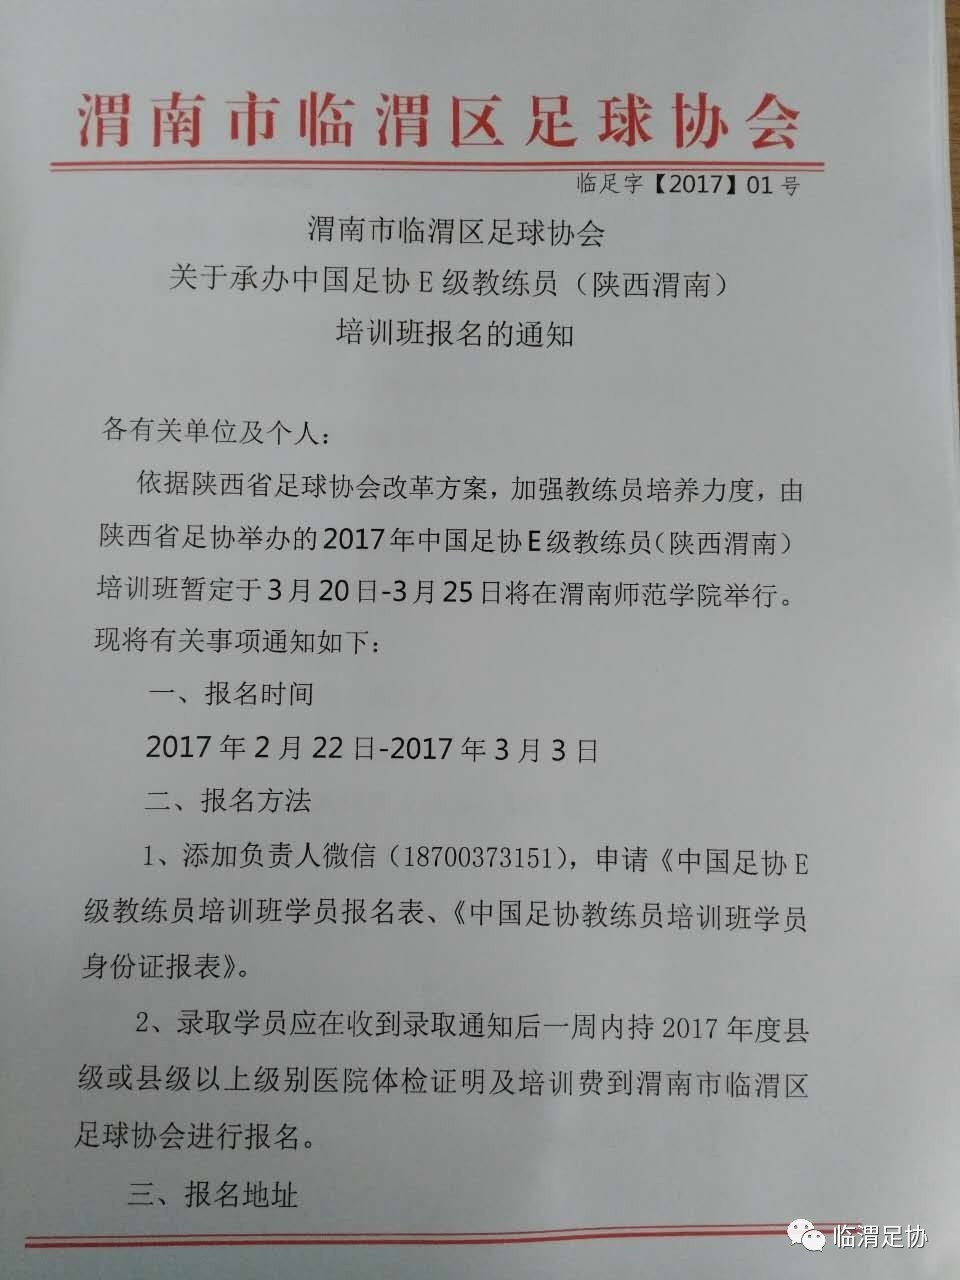 渭南市临渭区足球协会关于承办中国足协E级教